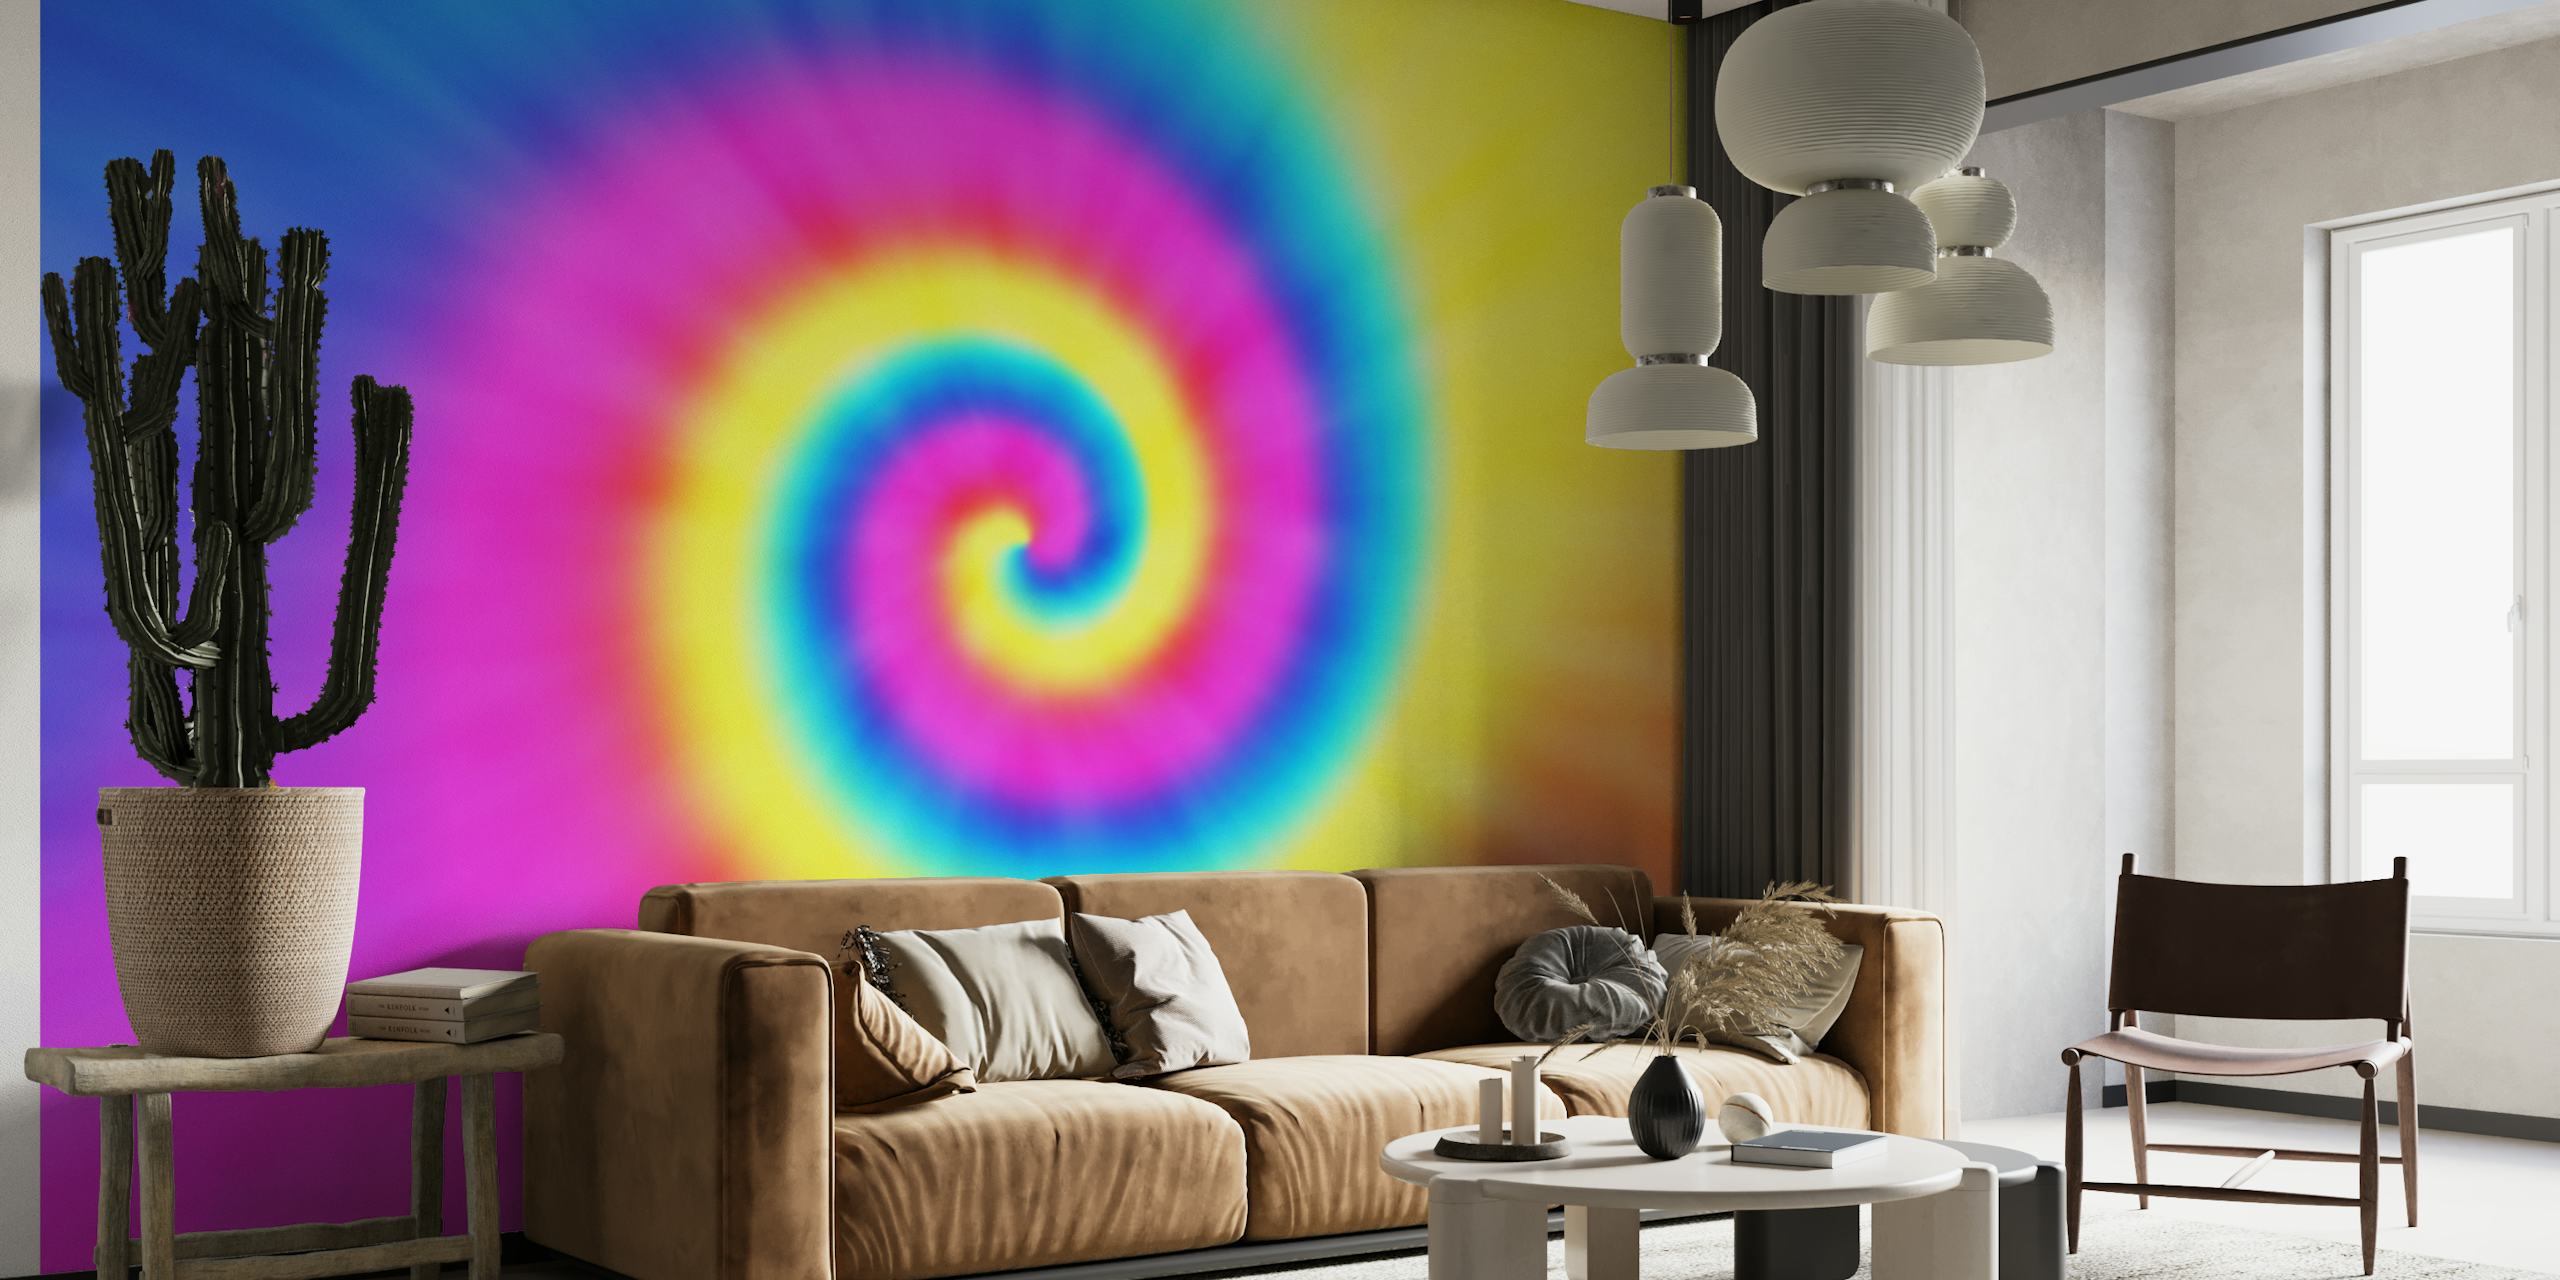 Psychedelisches Tie-Dye-Wandbild mit lebendigen, wirbelnden Farben